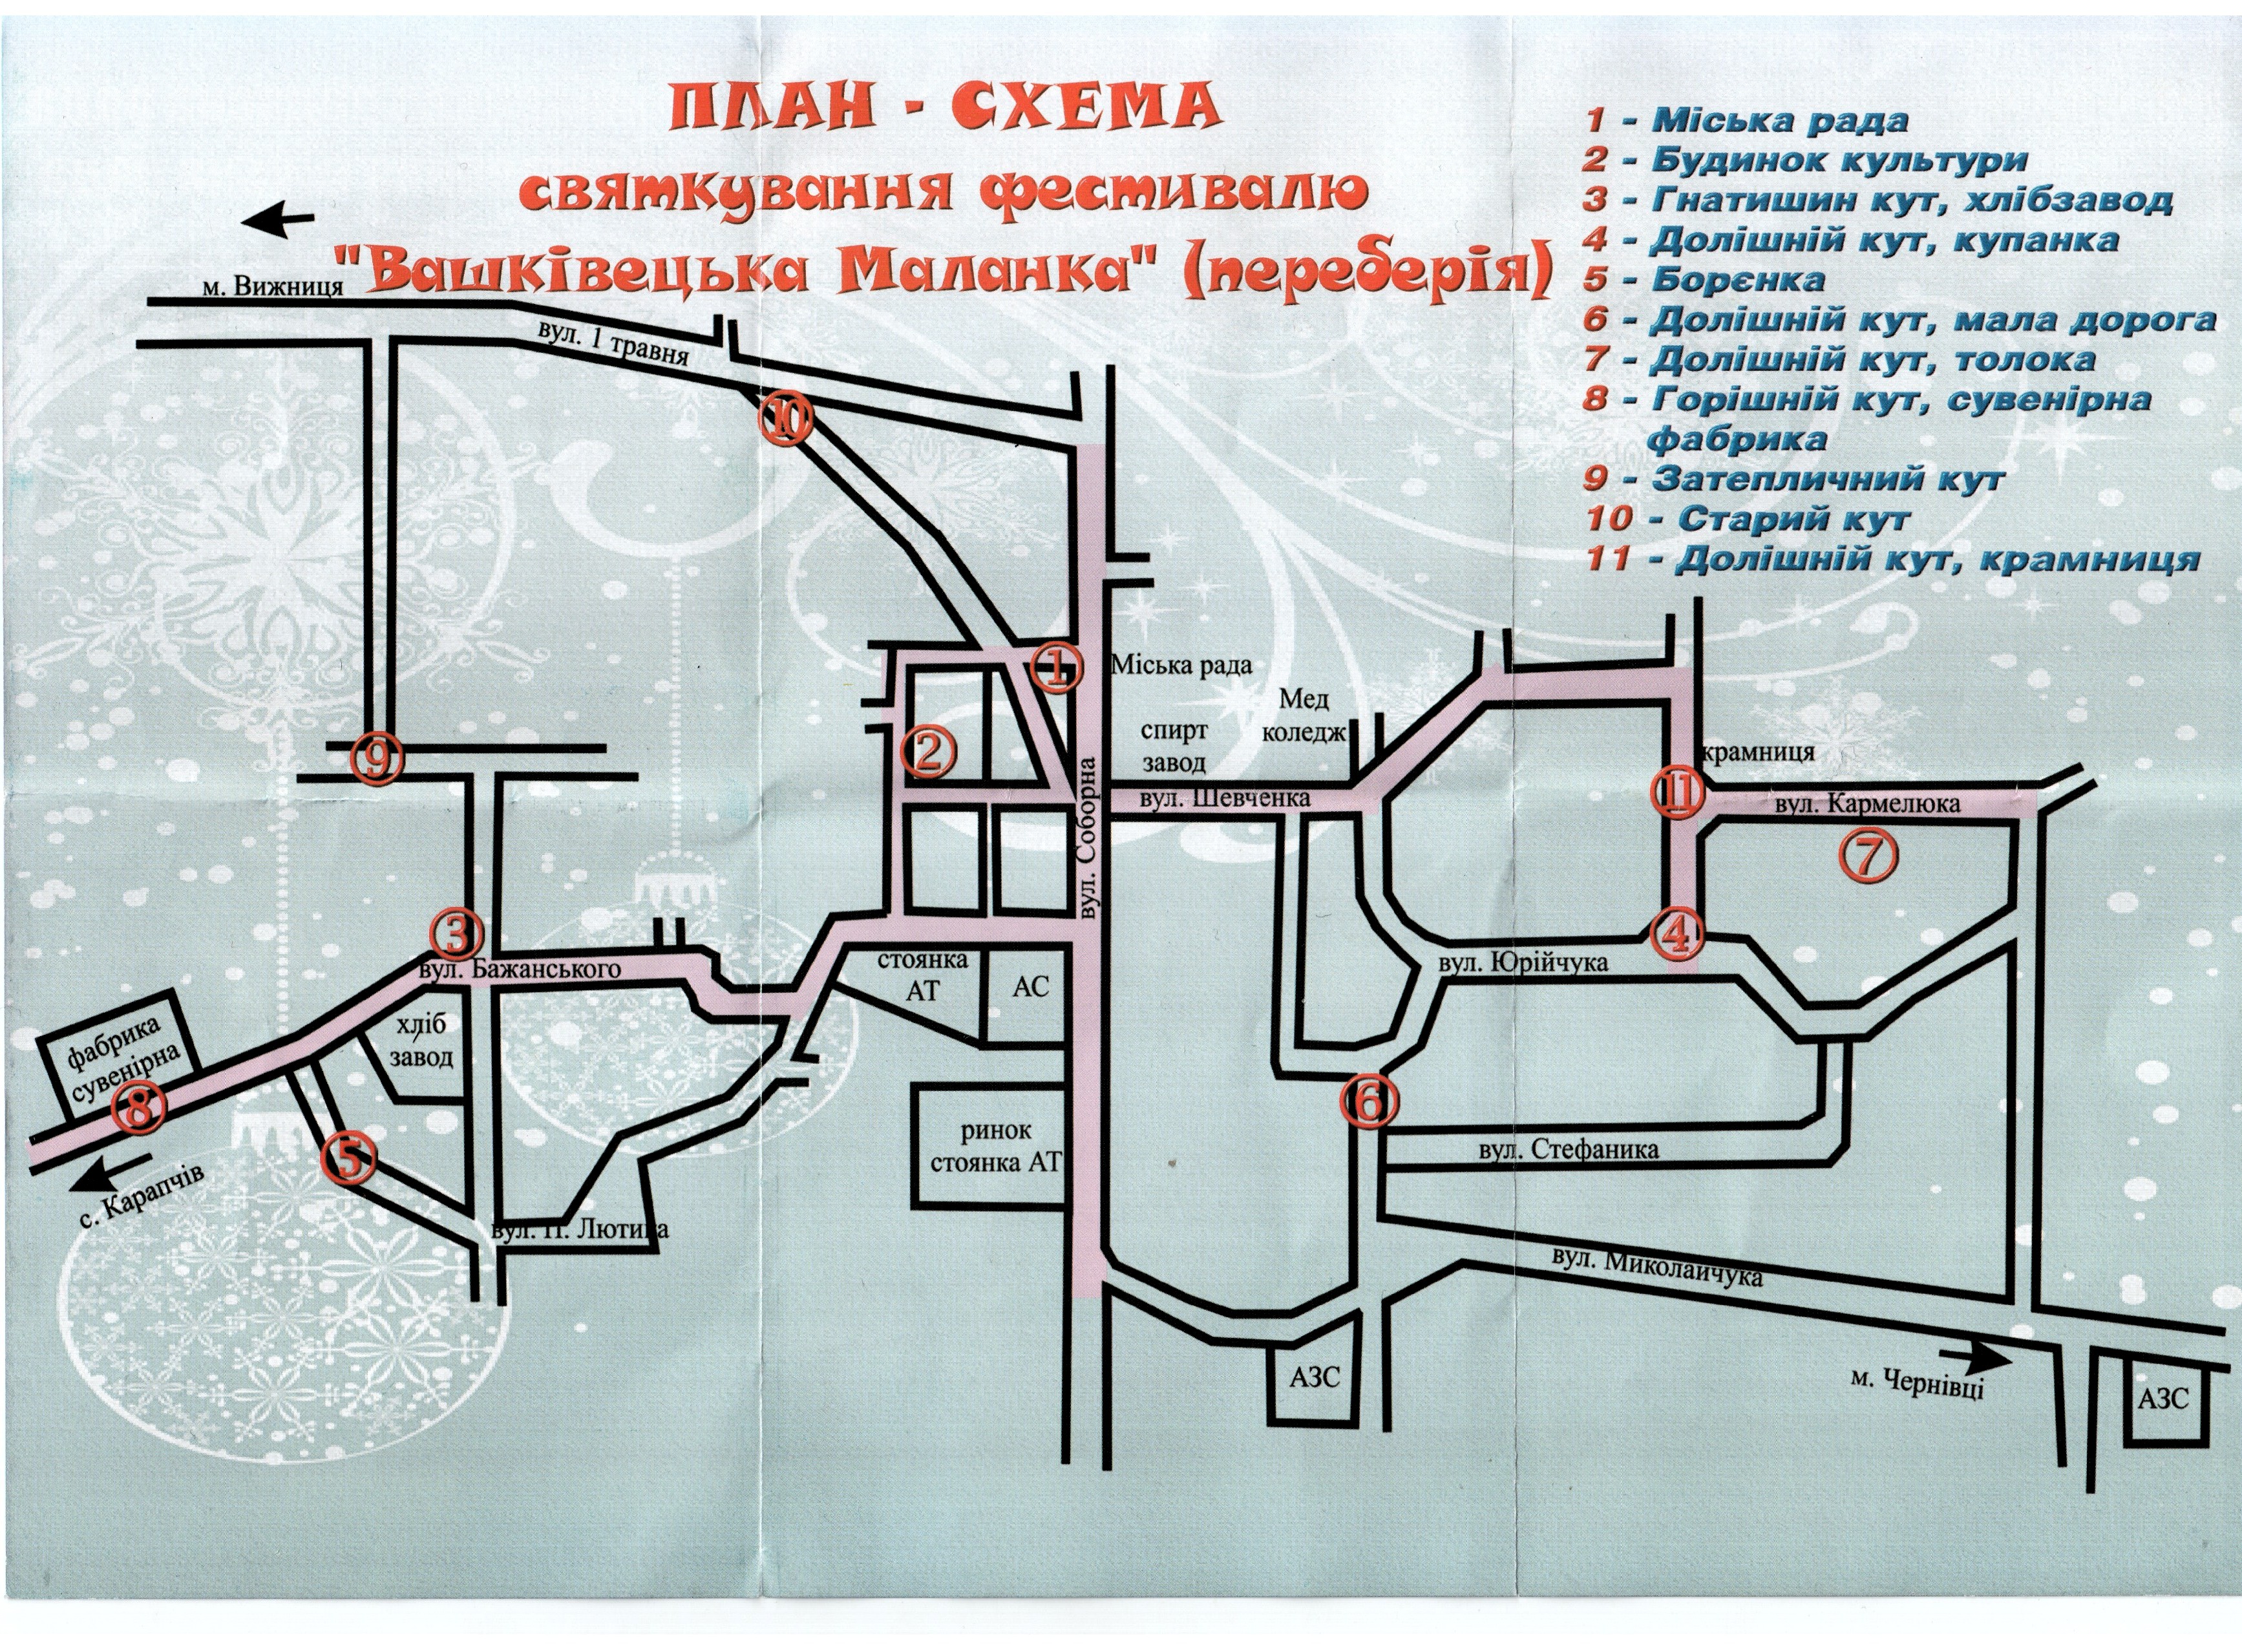 План - схема святкування фестивалю "Вашківецька Маланка" (переберія)